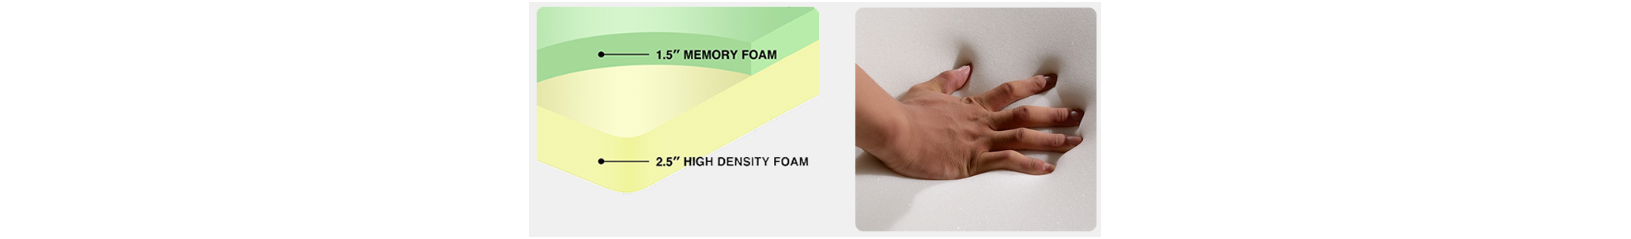 High density foam